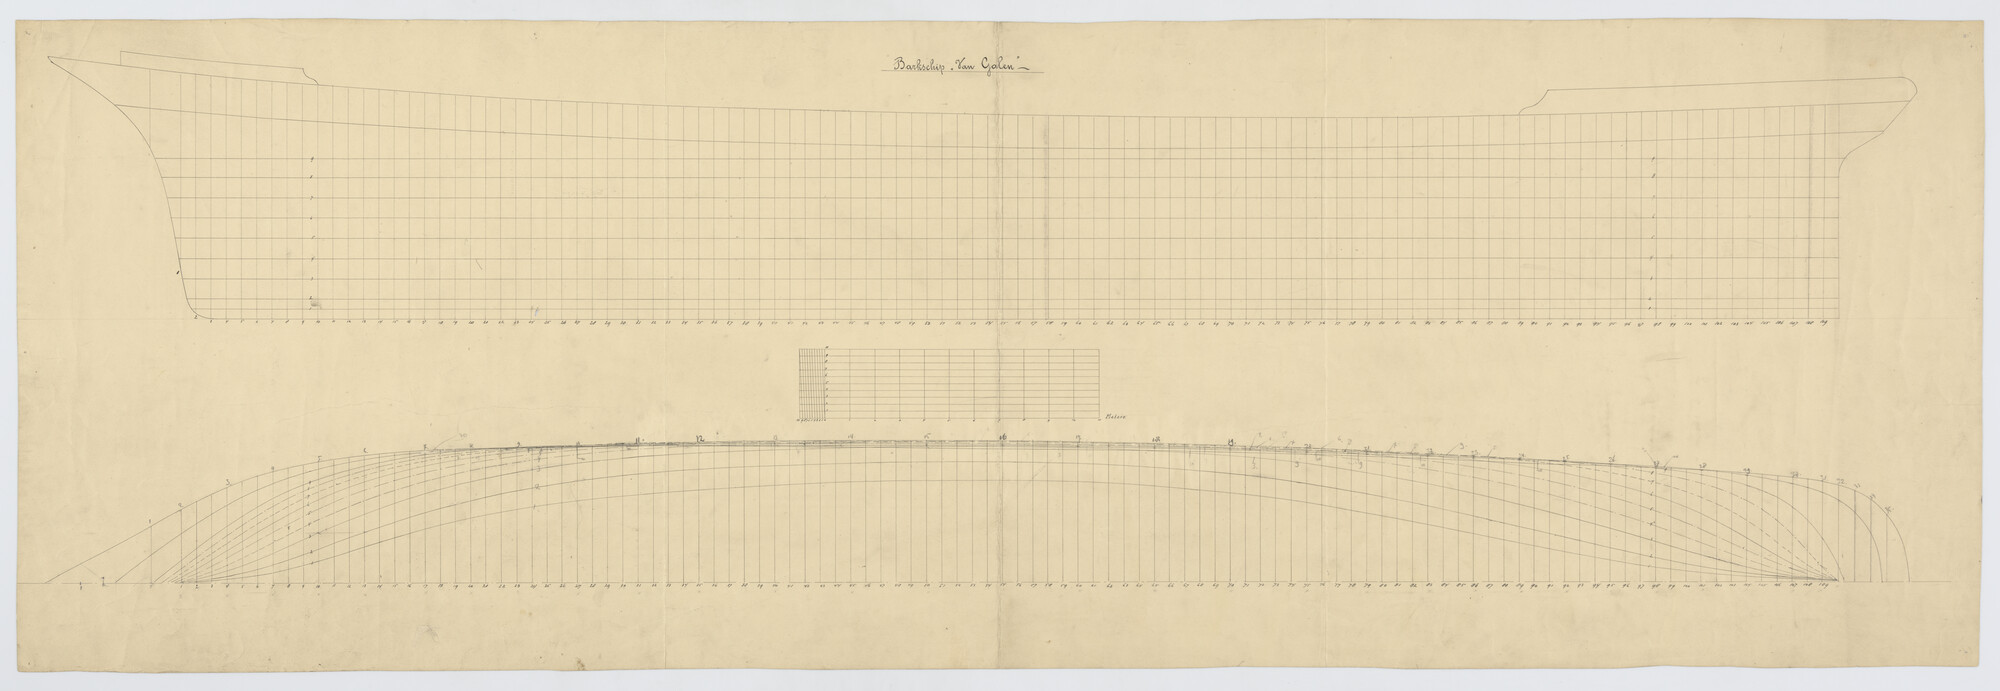 S.1156(05)0087; Zijaanzicht, waterlijnen van de klipperbark Van Galen; technische tekening